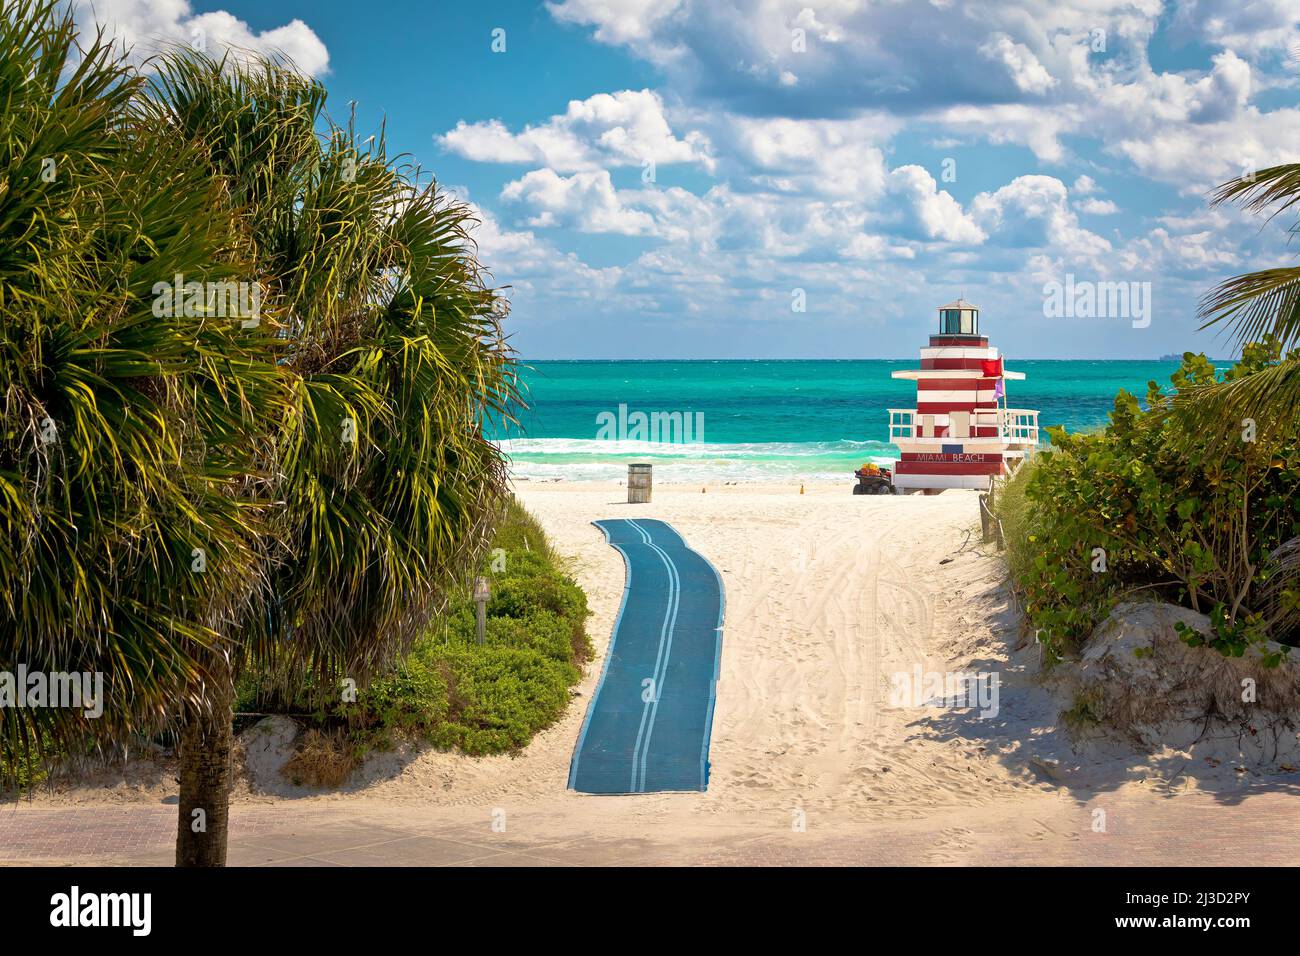 Miami Beach plage de sable coloré et vue de poste de maître-nageur, état de Floride, États-Unis d'Amérique Banque D'Images